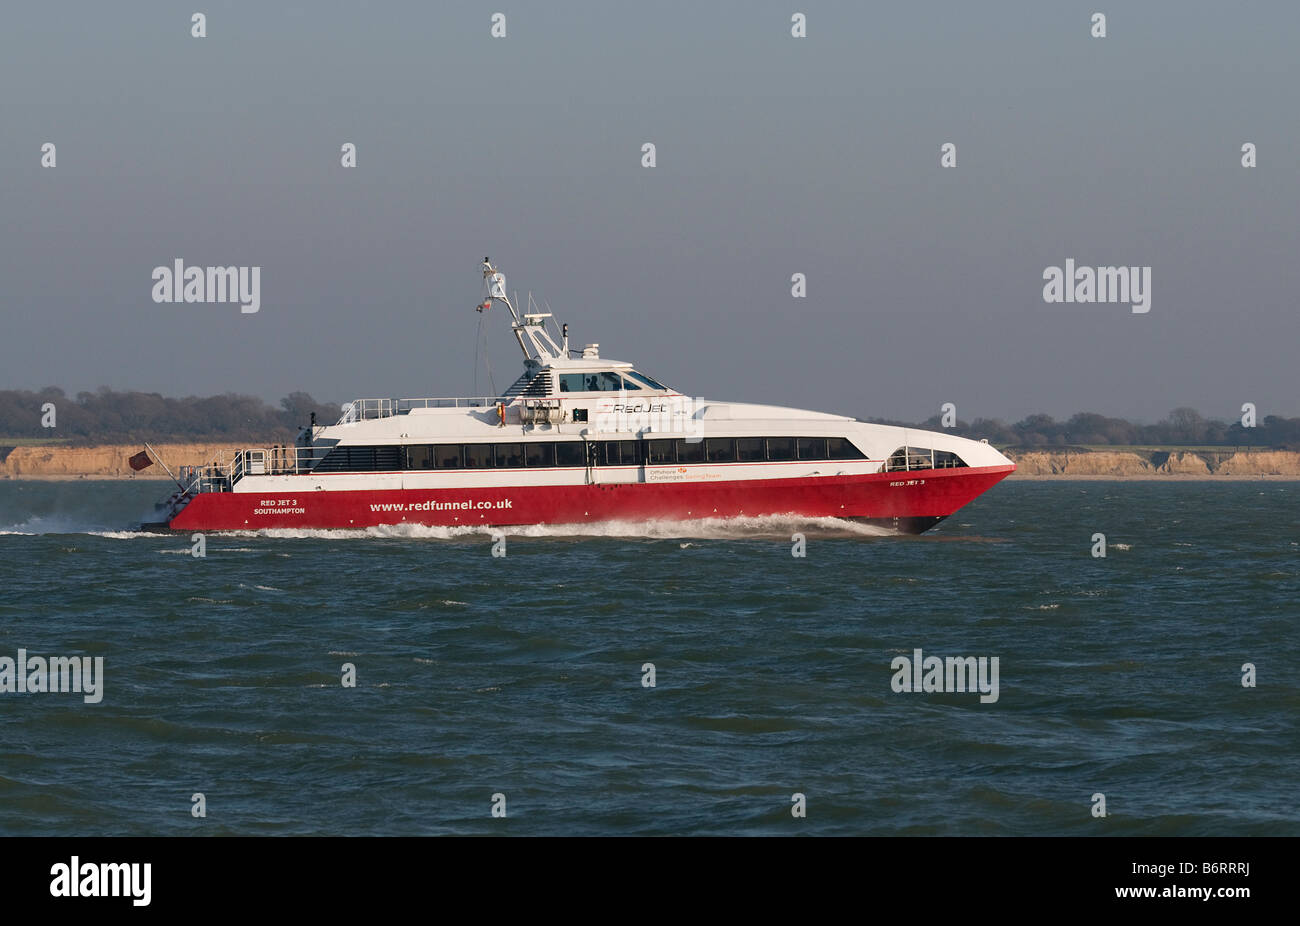 Imbuto Rosso s Jet rosso 3 in catamarano Il Solent Foto Stock